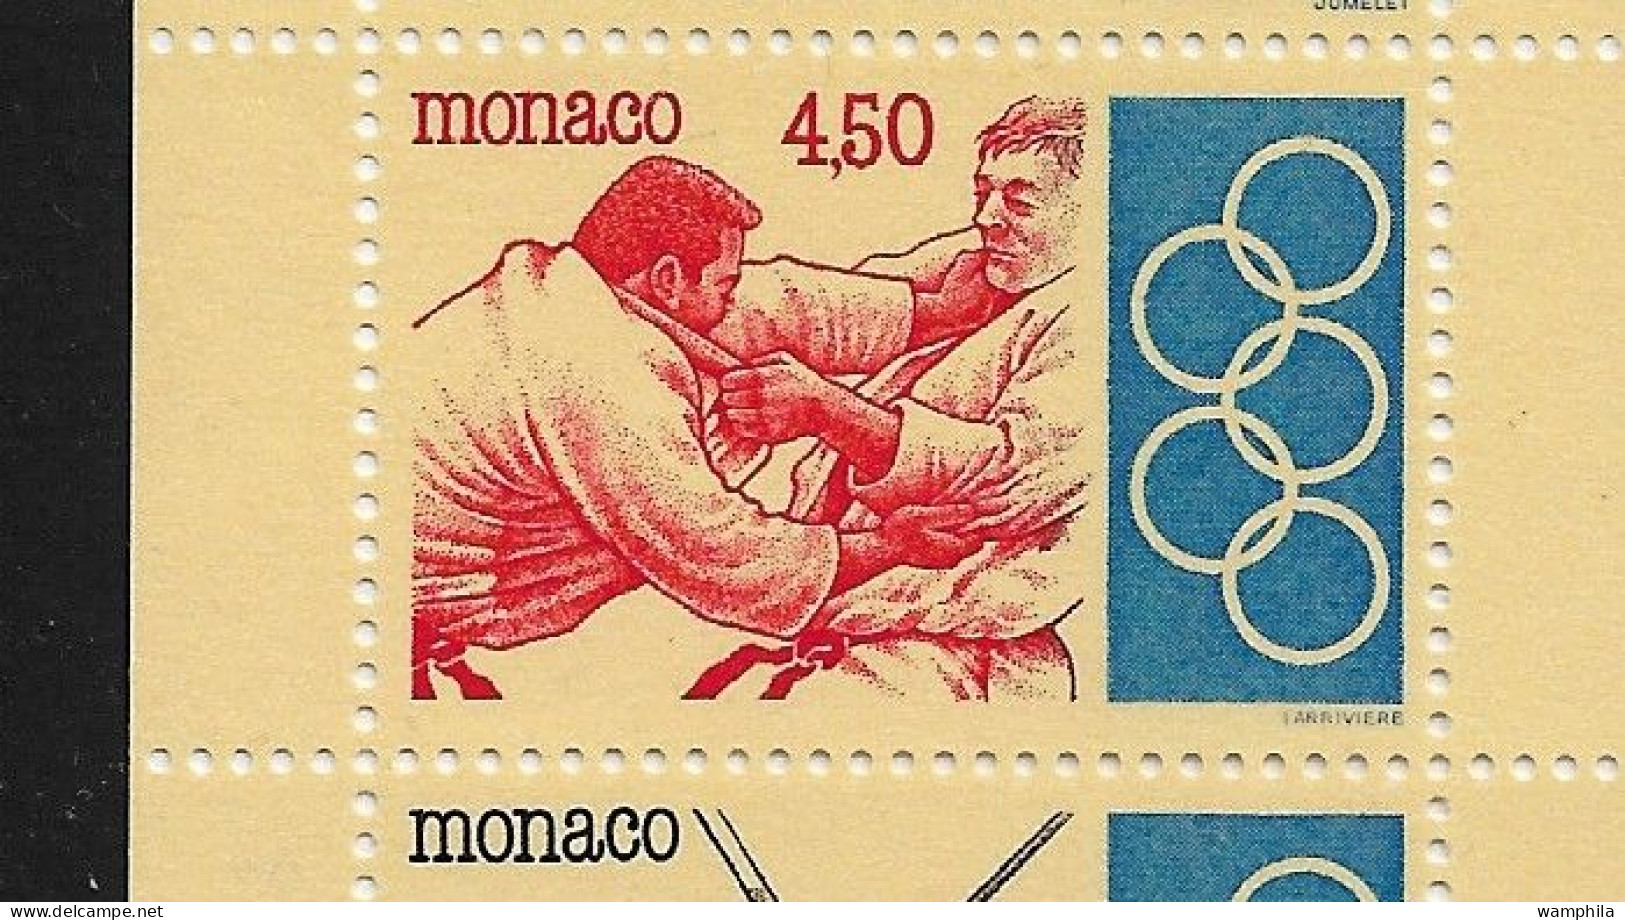 Monaco 1993. Carnet N°11, J.O .Anneaux, Judo, Escrime, Haies, Tir à L'arc, Haltérophilie. - Judo